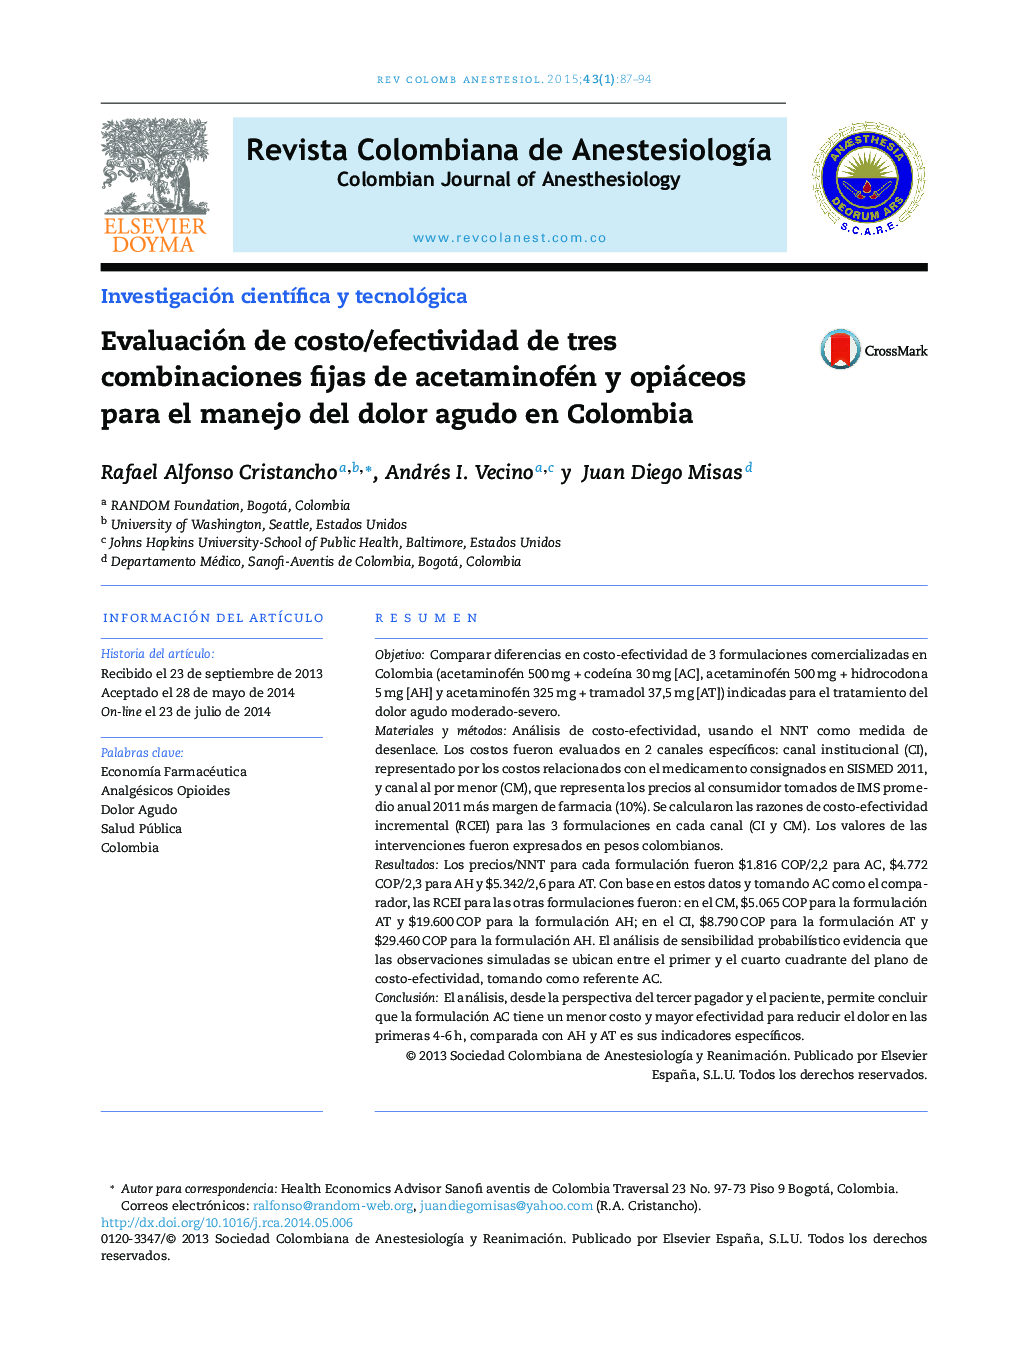 Evaluación de costo/efectividad de tres combinaciones fijas de acetaminofén y opiáceos para el manejo del dolor agudo en Colombia